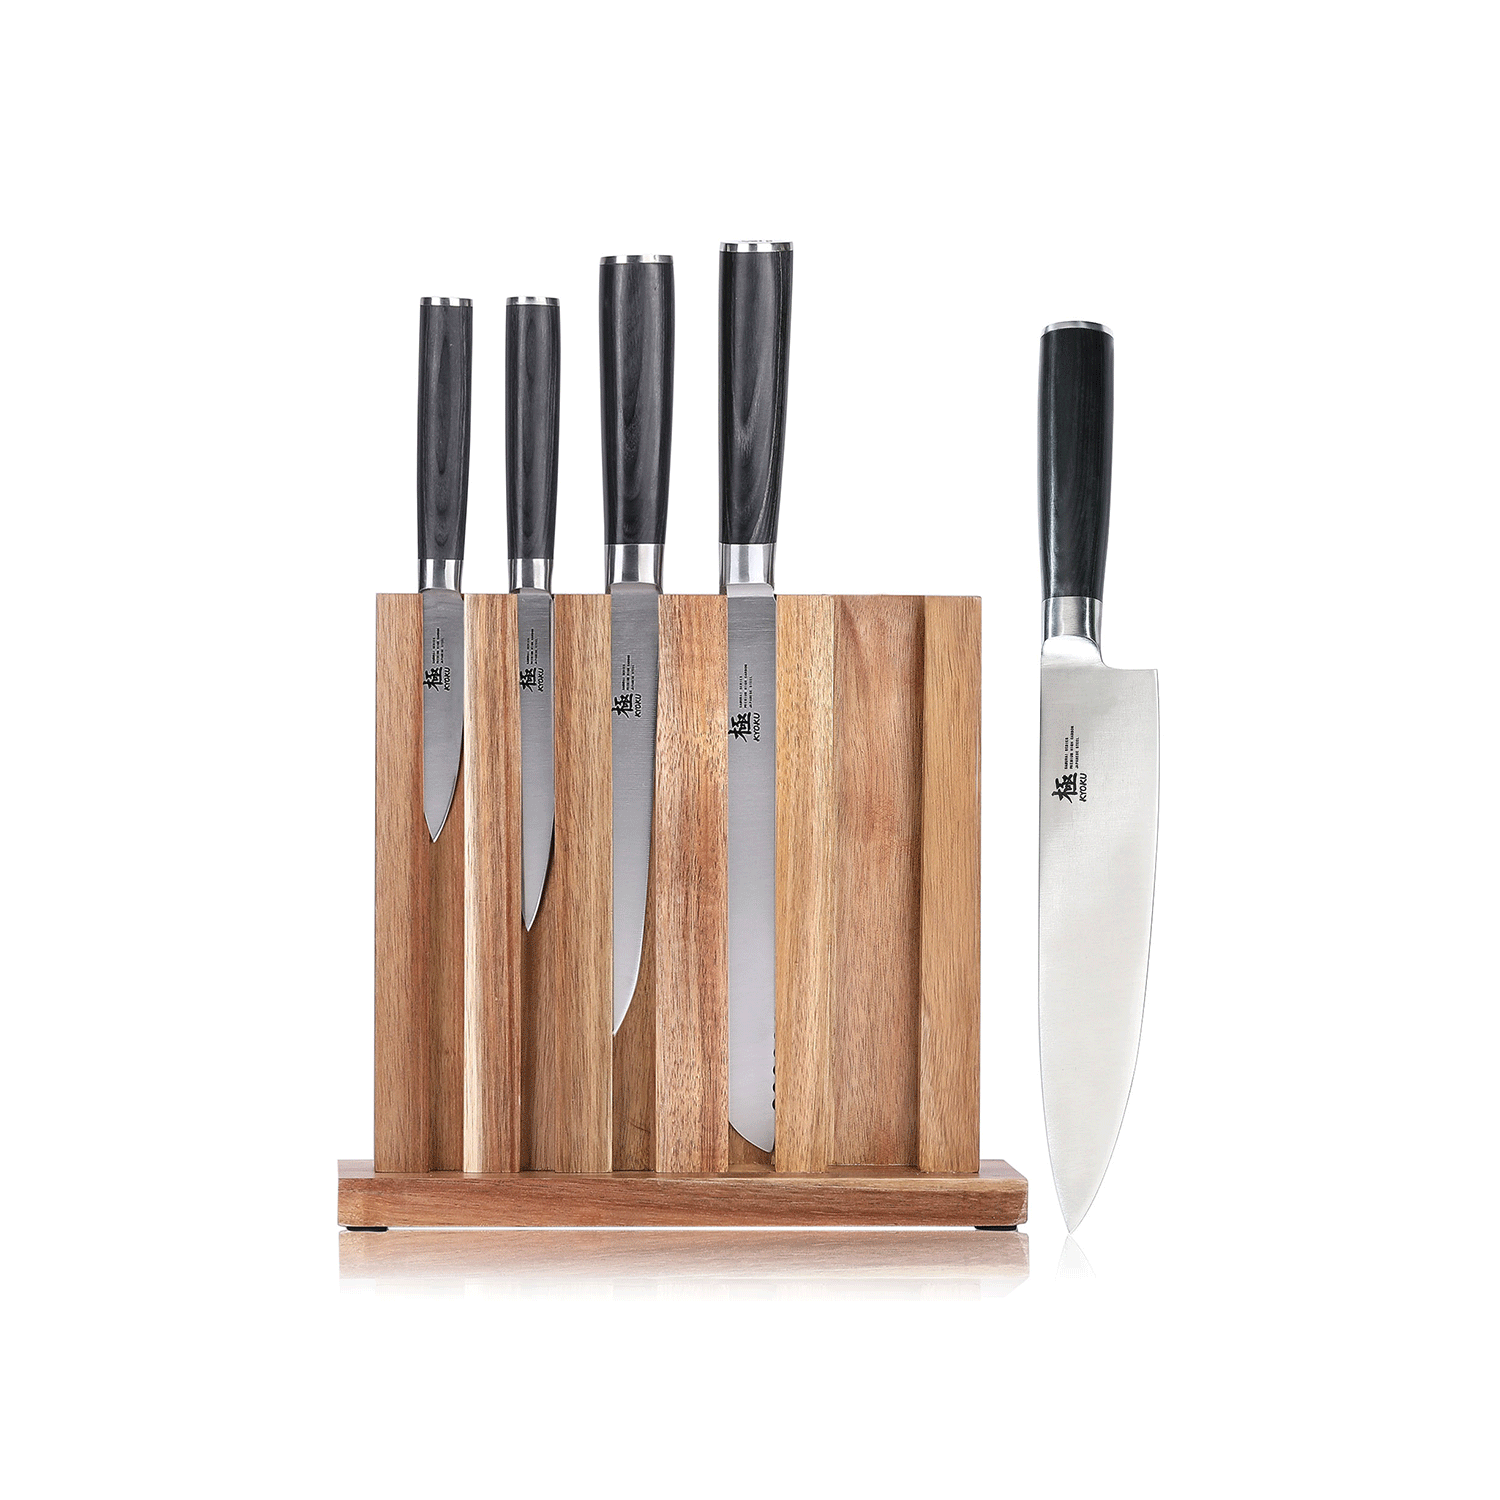 https://kyokuknives.com/cdn/shop/files/5-Piece-Kitchen-Knife-Block-Set-Kyoku-Knives-1697012908222.png?v=1697012911